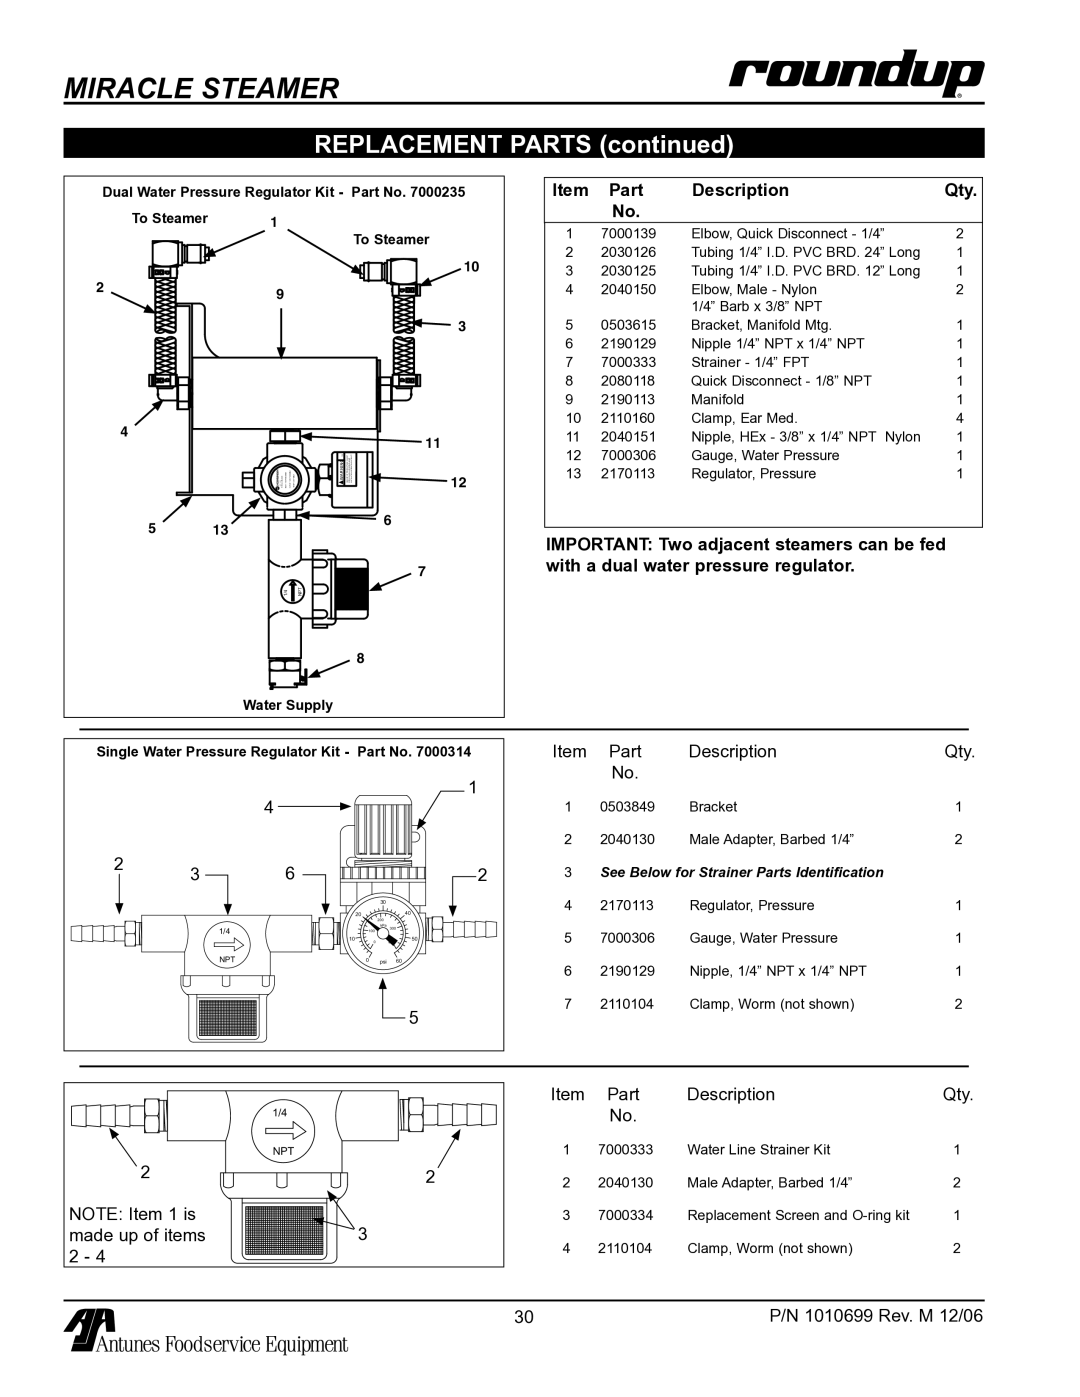 Antunes, AJ MS-150/155 owner manual Part Description Qty 